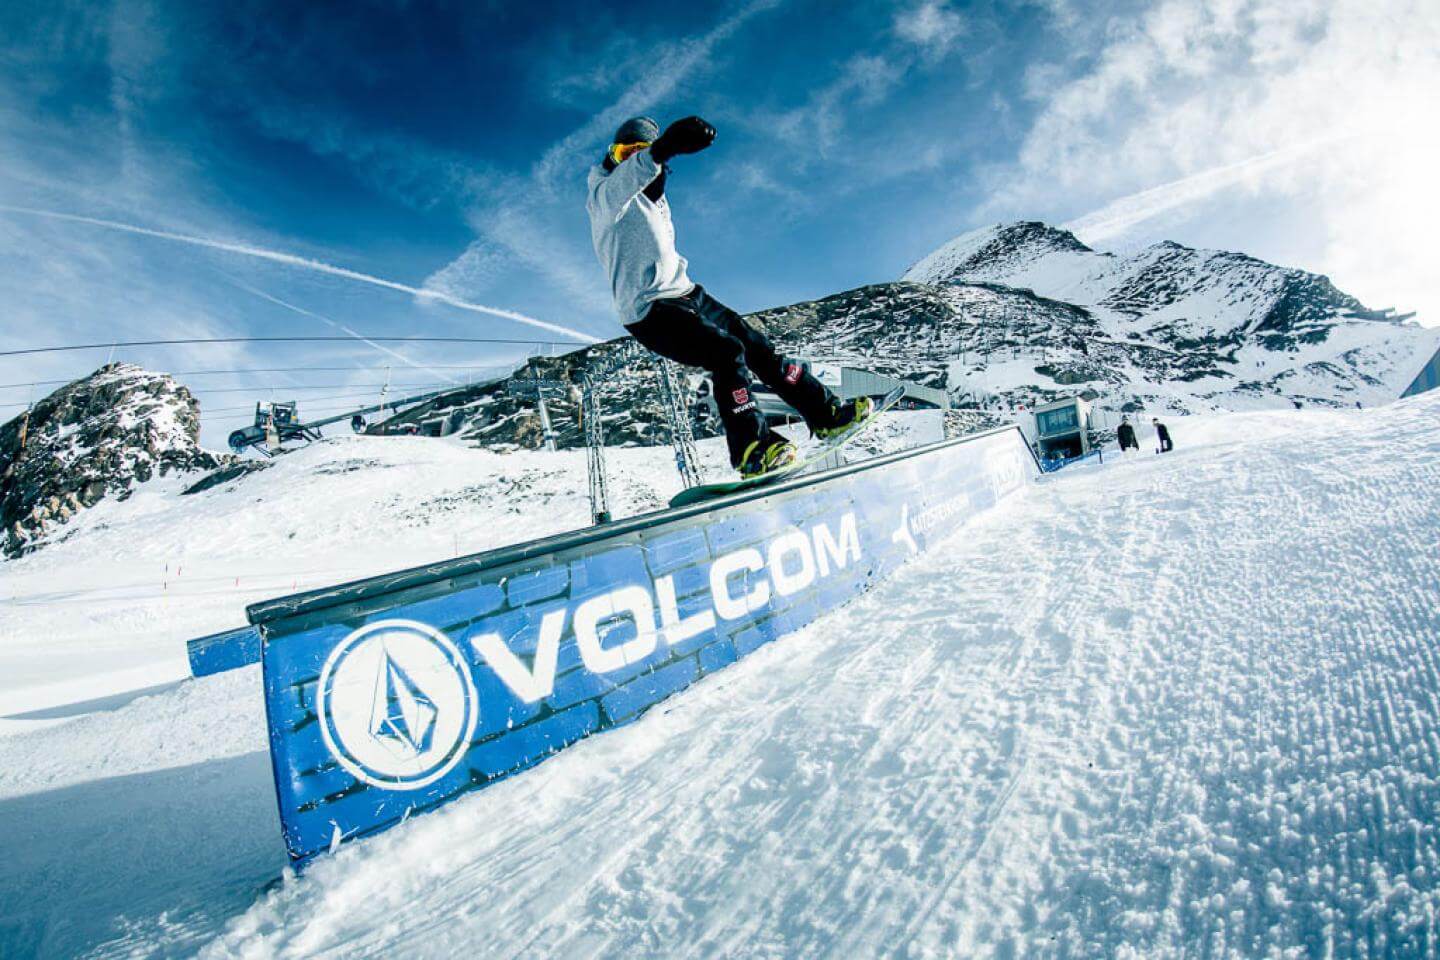 volcom snowboarding wallpaper